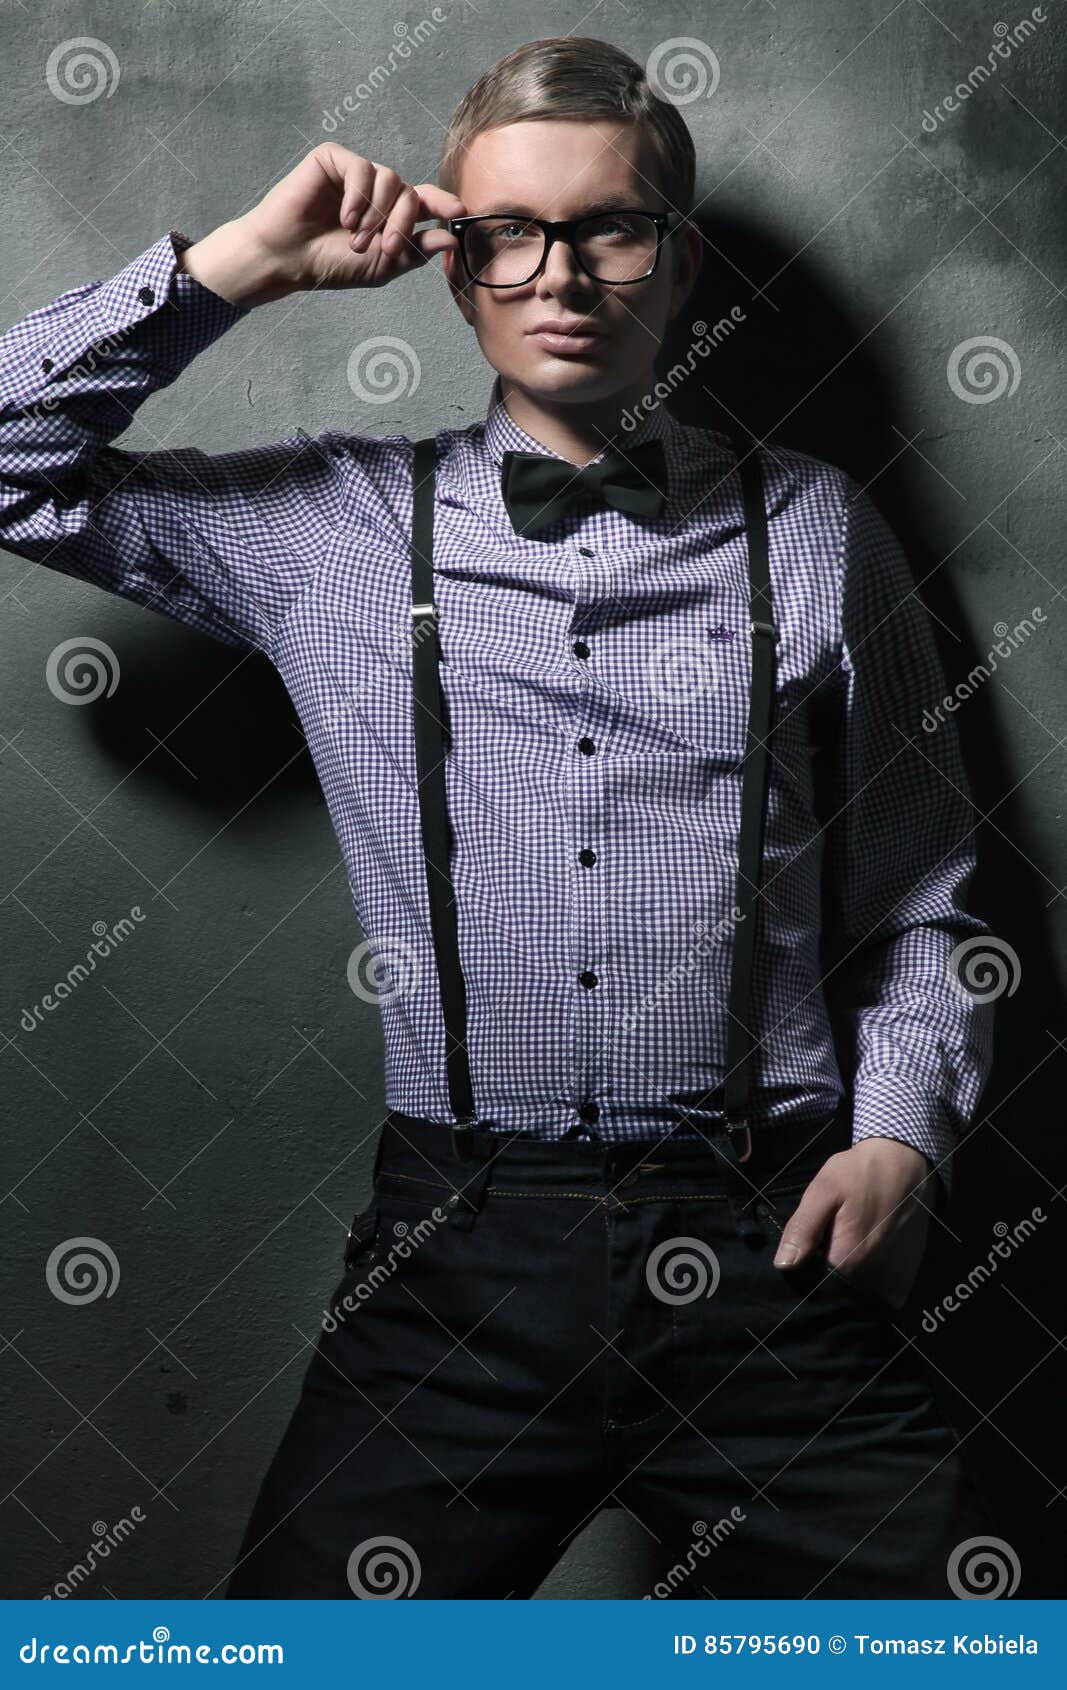 Gorgeous Fashion Style Photo of an Elegant Man Stock Photo - Image of ...